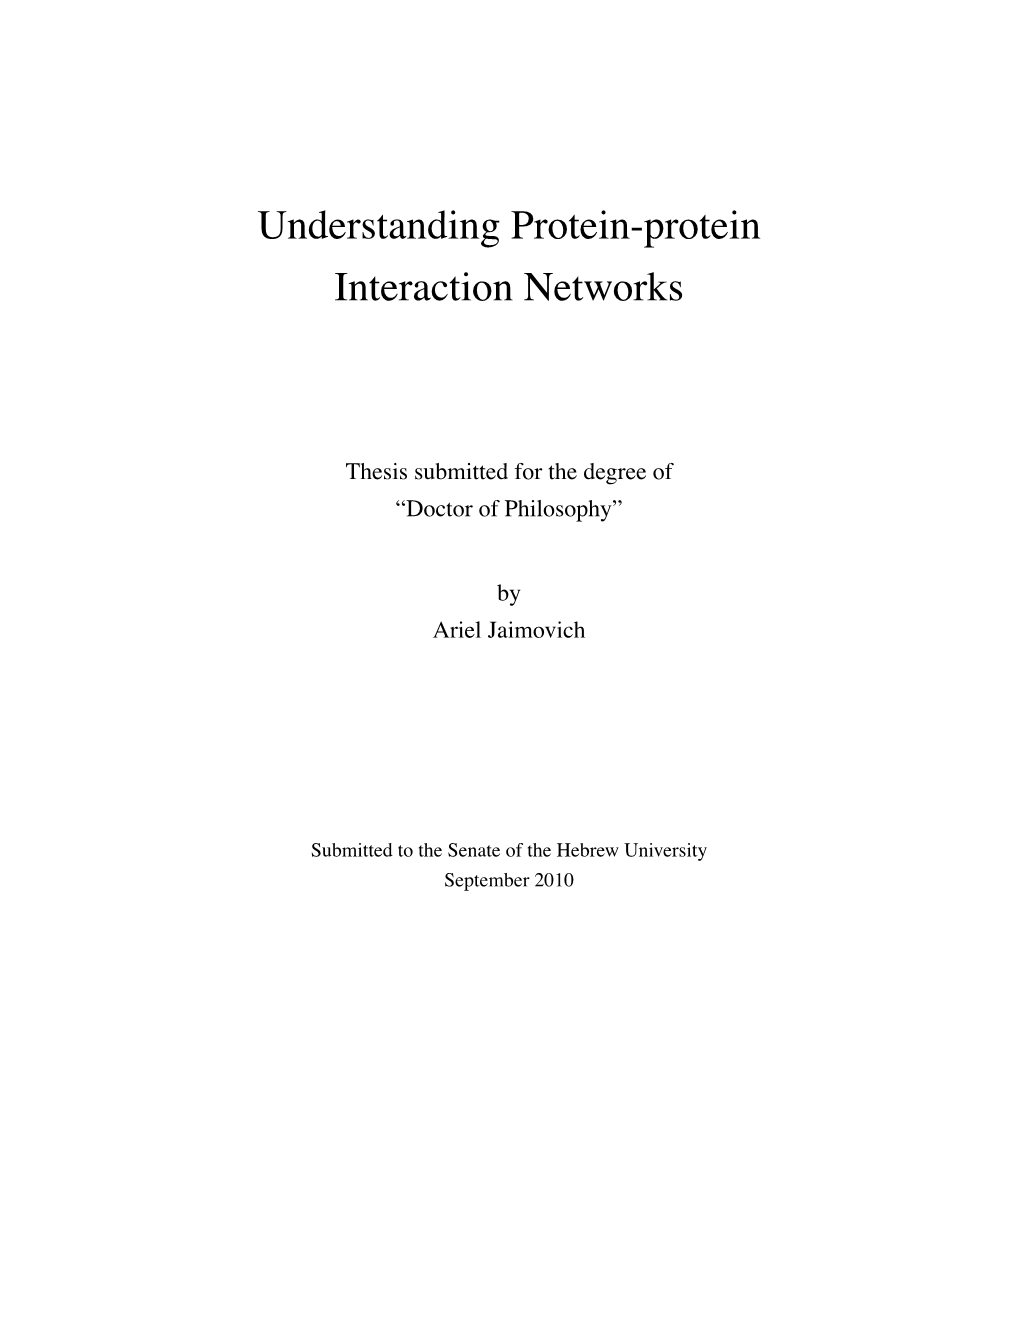 Understanding Protein-Protein Interaction Networks